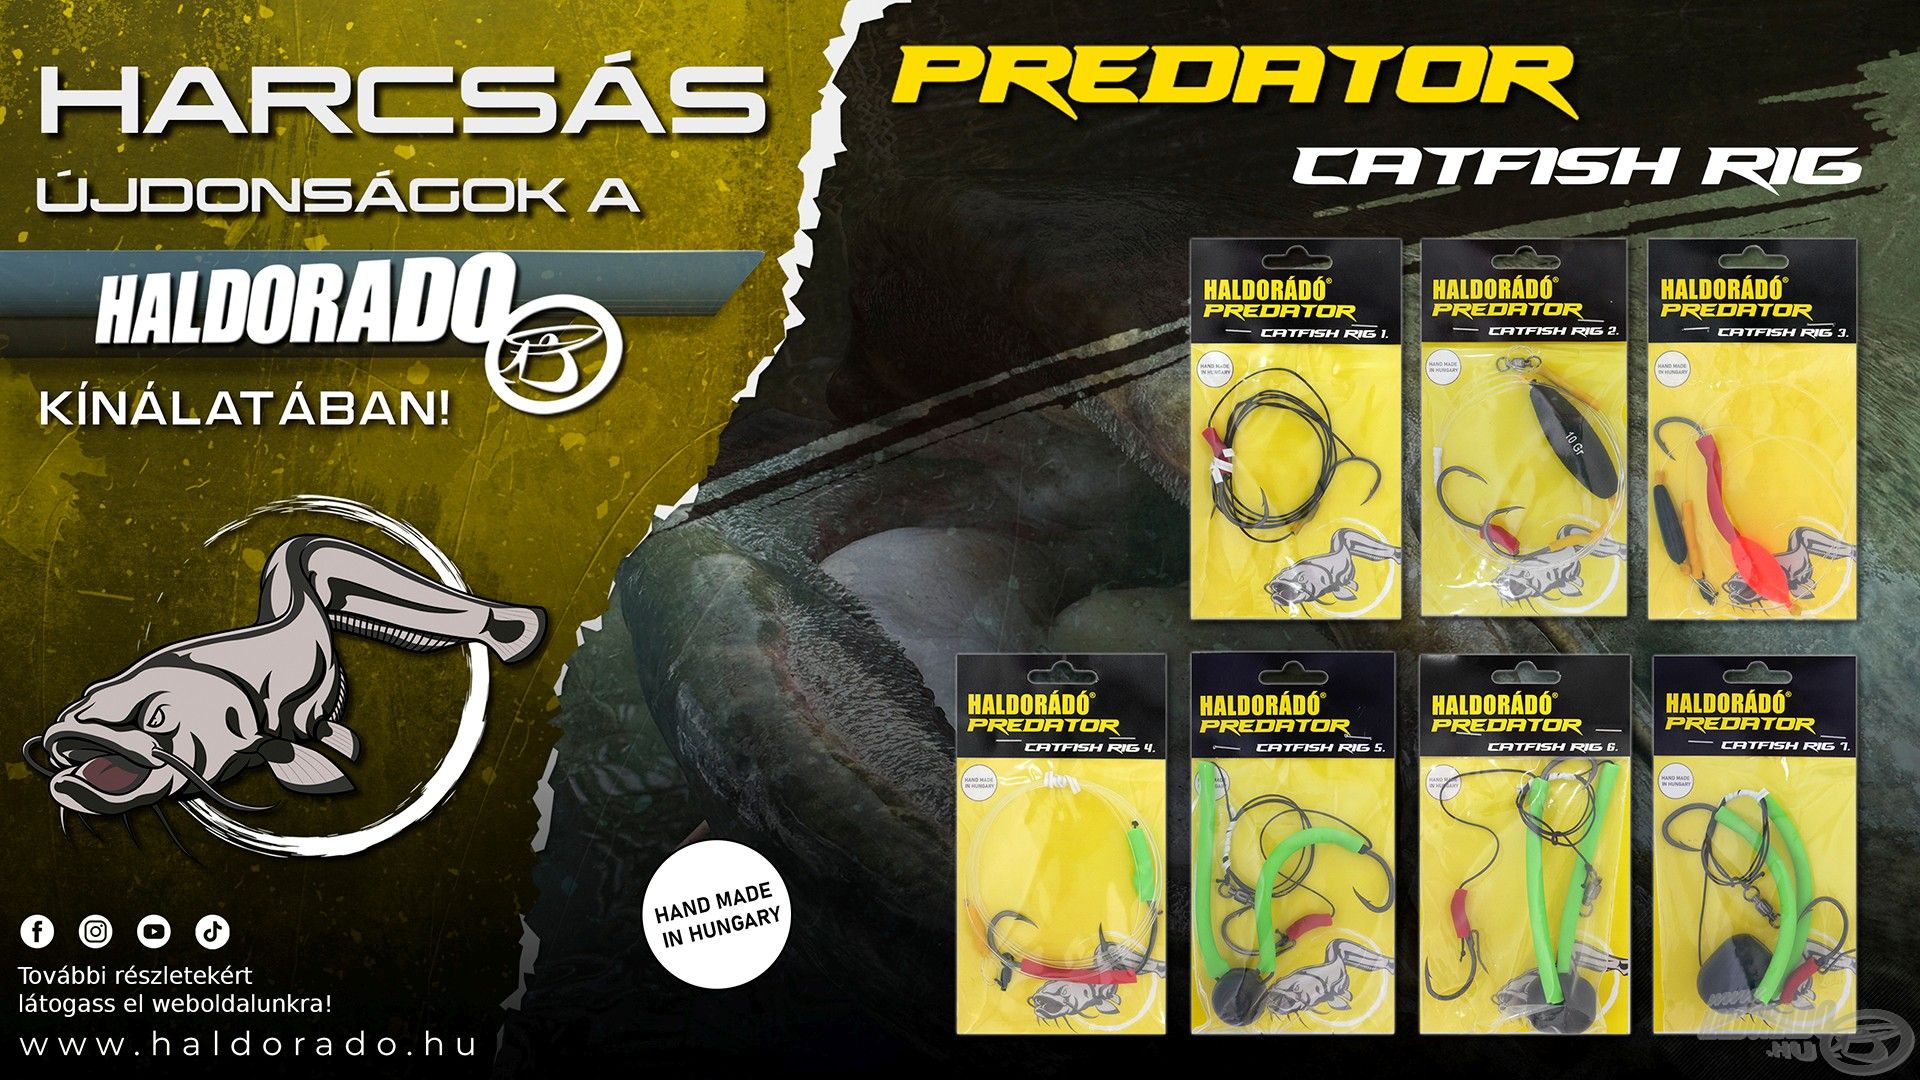 A Haldorádó Predator Catfish Rig kollekció professzionális, készre szerelt, a mai kor technikáihoz tervezett harcsázó előkéket kínál